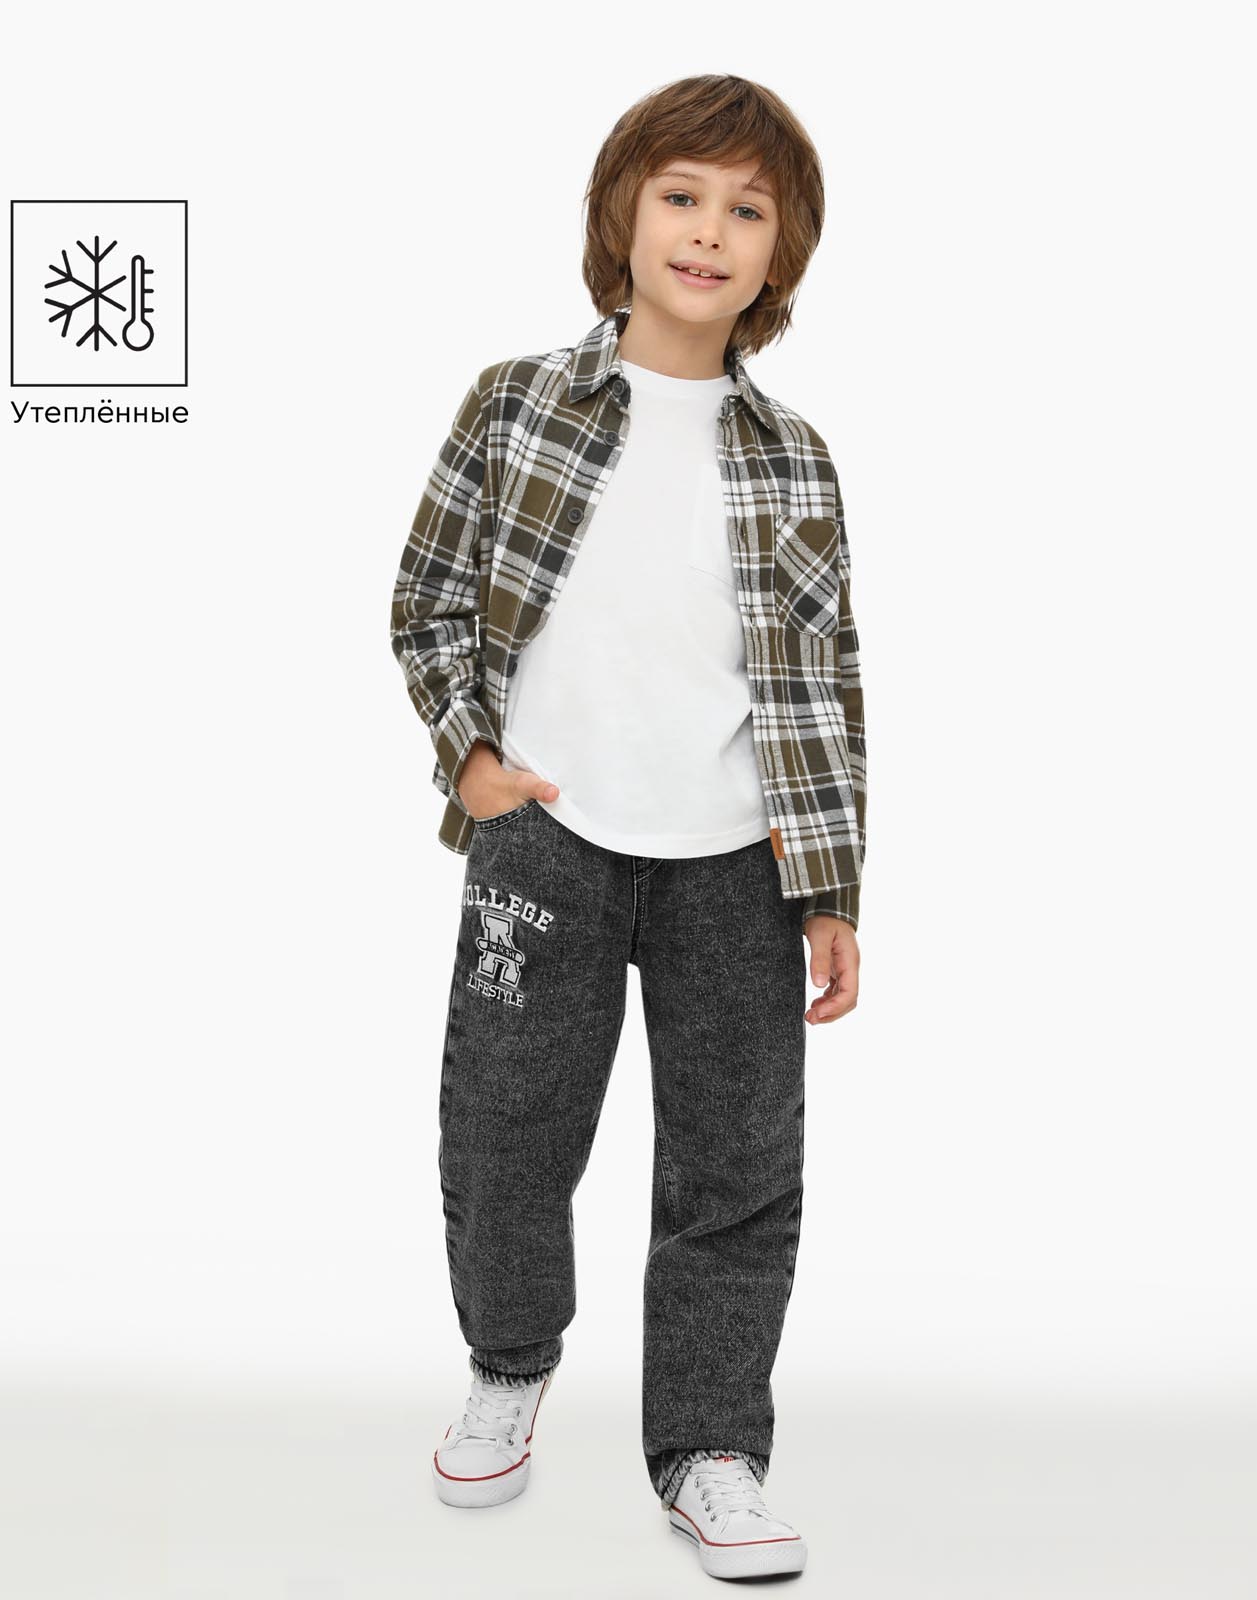 Утеплённые джинсы straight для мальчика Gloria Jeans BWB001743 серый/айс 9-10л/140